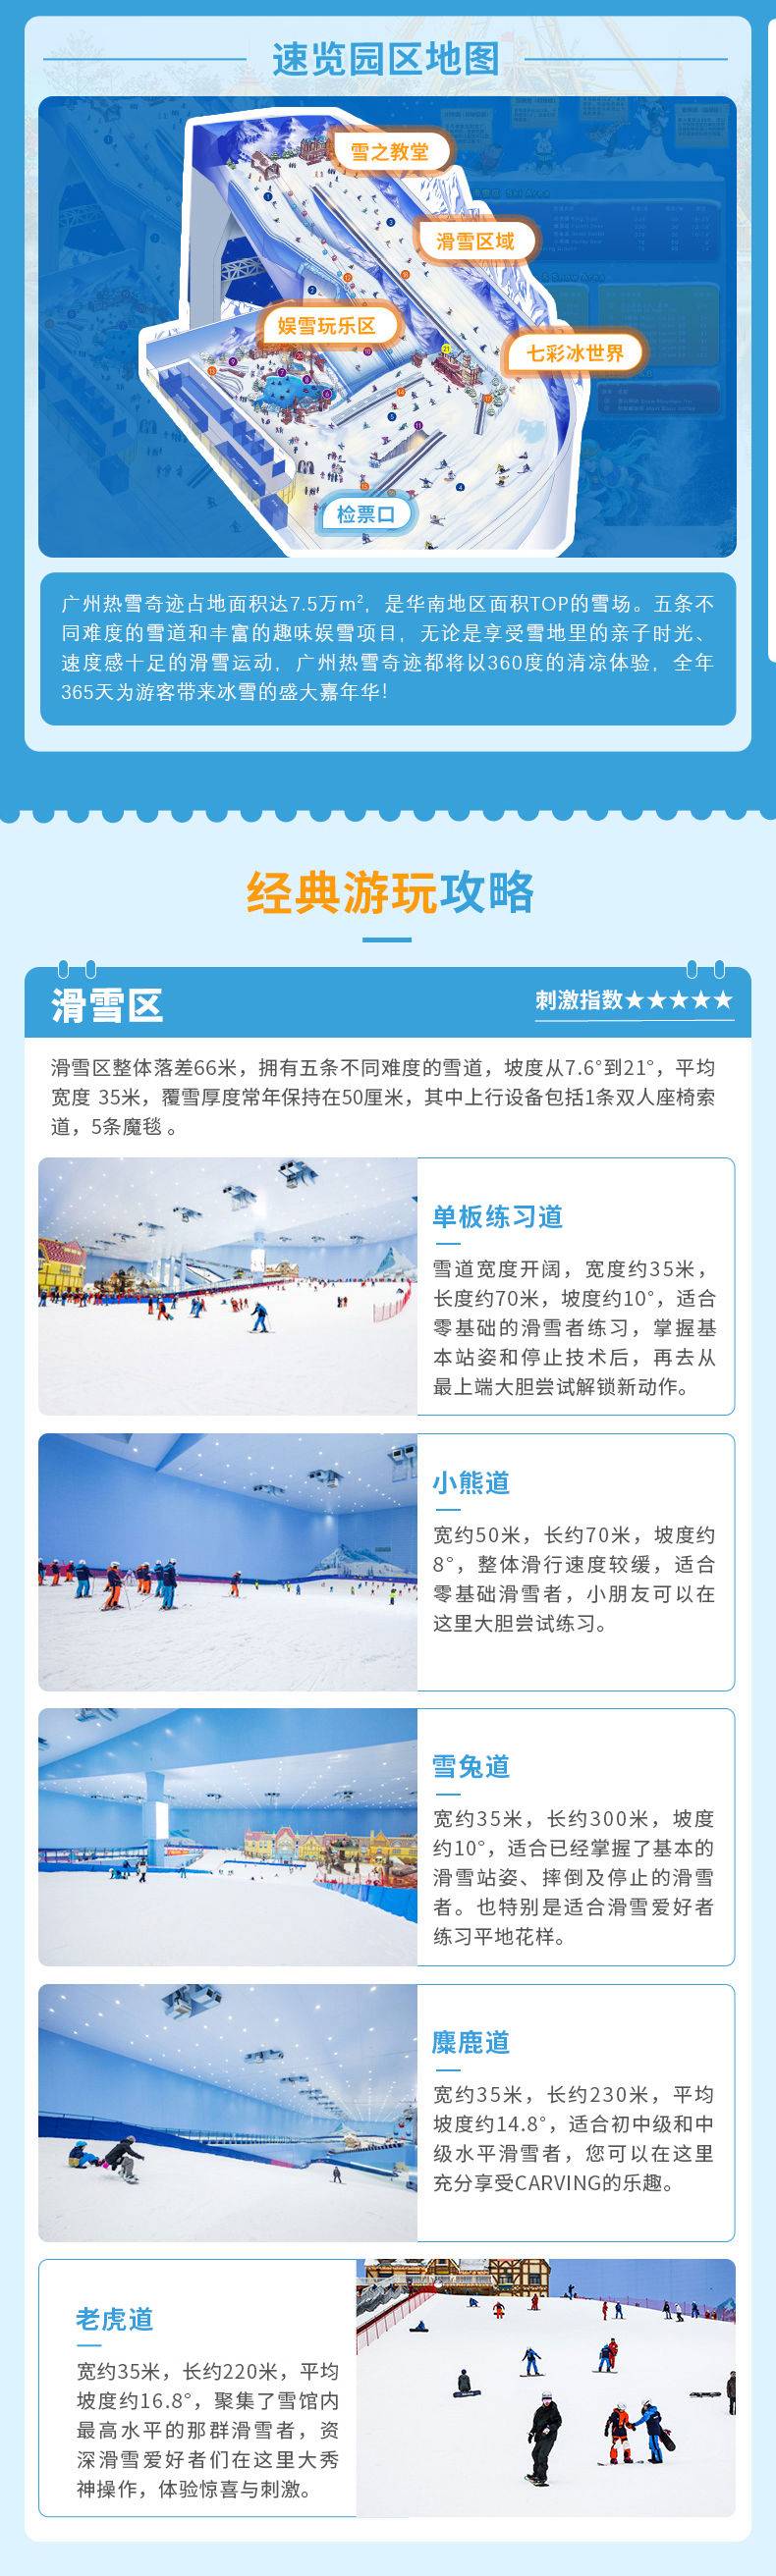 【春节特惠】广州热雪奇迹-娱雪2小时双人票（1.11-2.5，春节不适用）